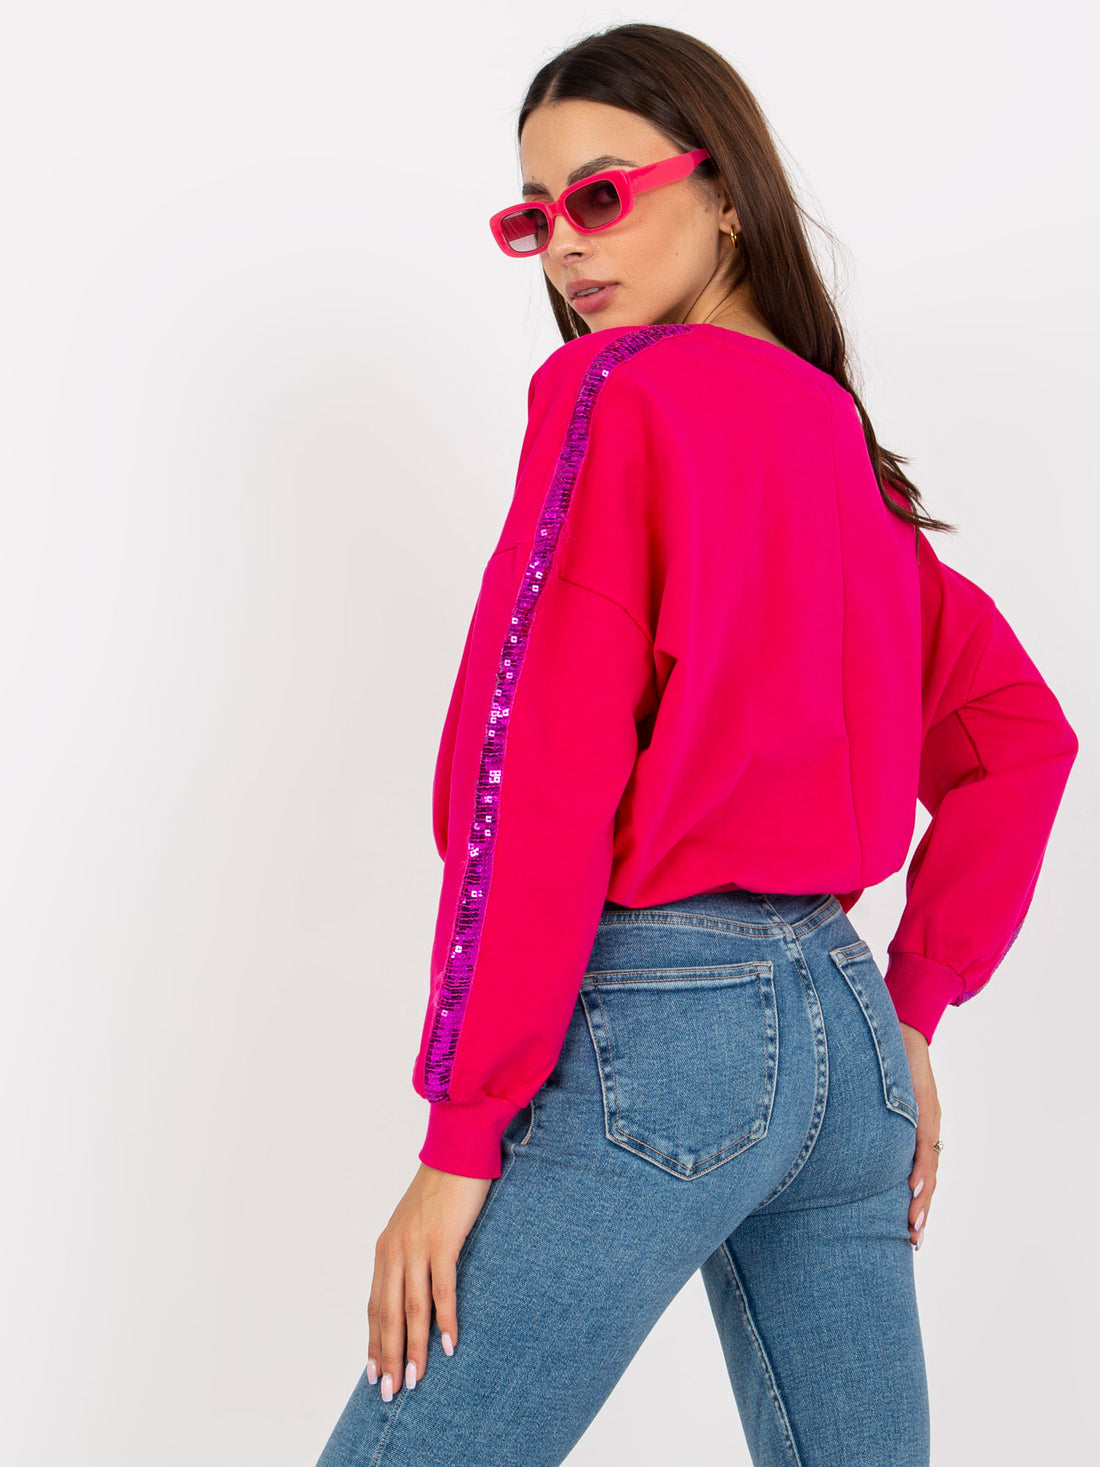 Sequins Sleeve Sweatshirt Hot Pink